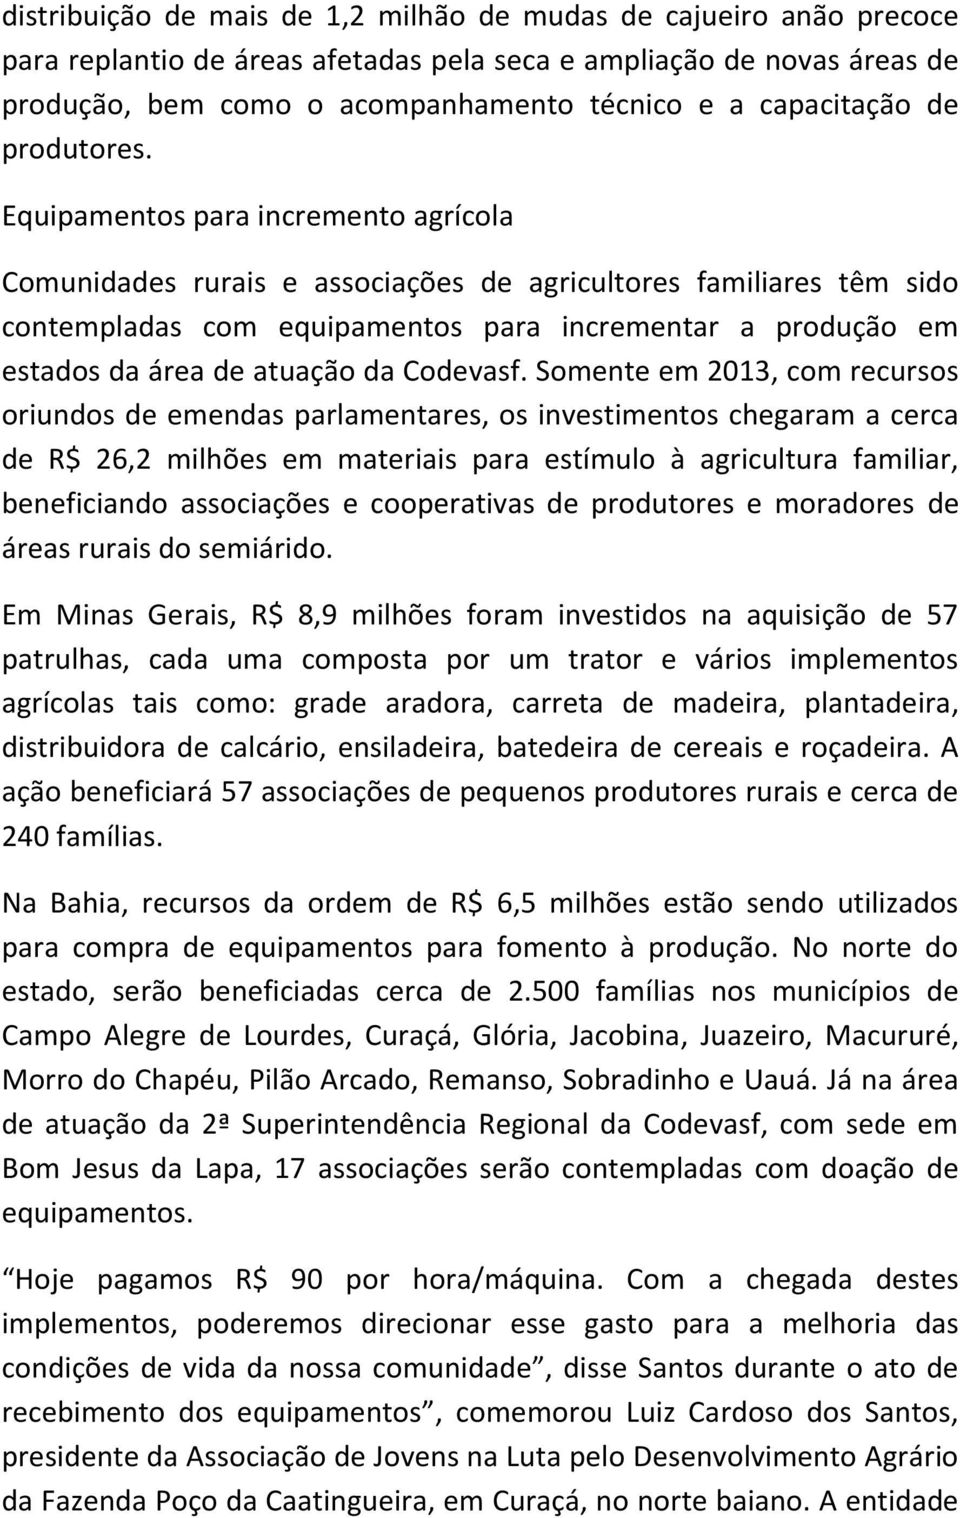 Equipamentos para incremento agrícola Comunidades rurais e associações de agricultores familiares têm sido contempladas com equipamentos para incrementar a produção em estados da área de atuação da